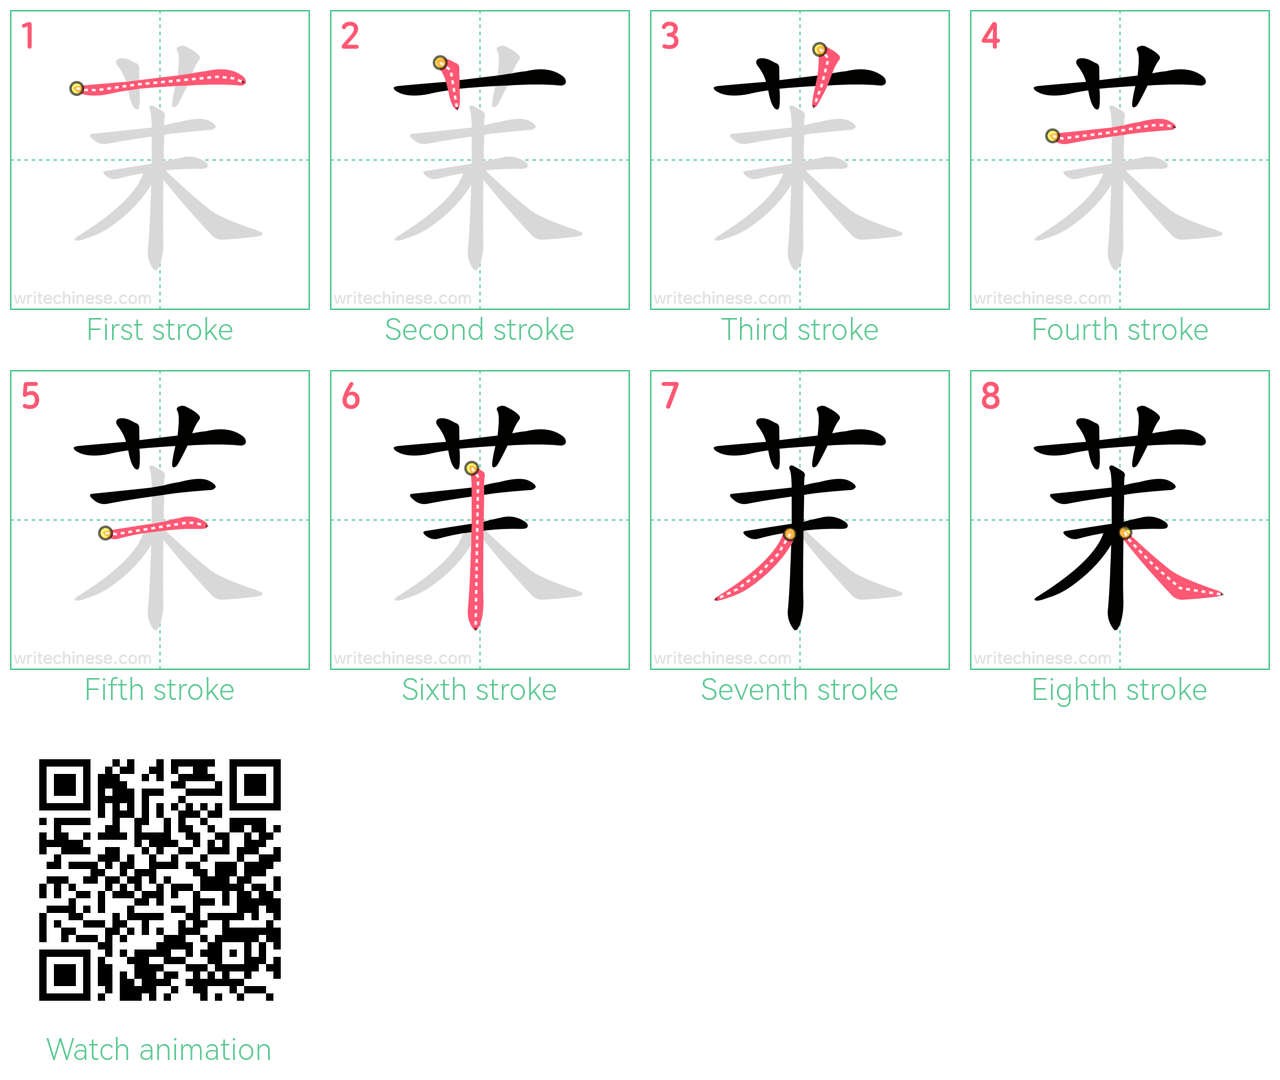 茉 step-by-step stroke order diagrams